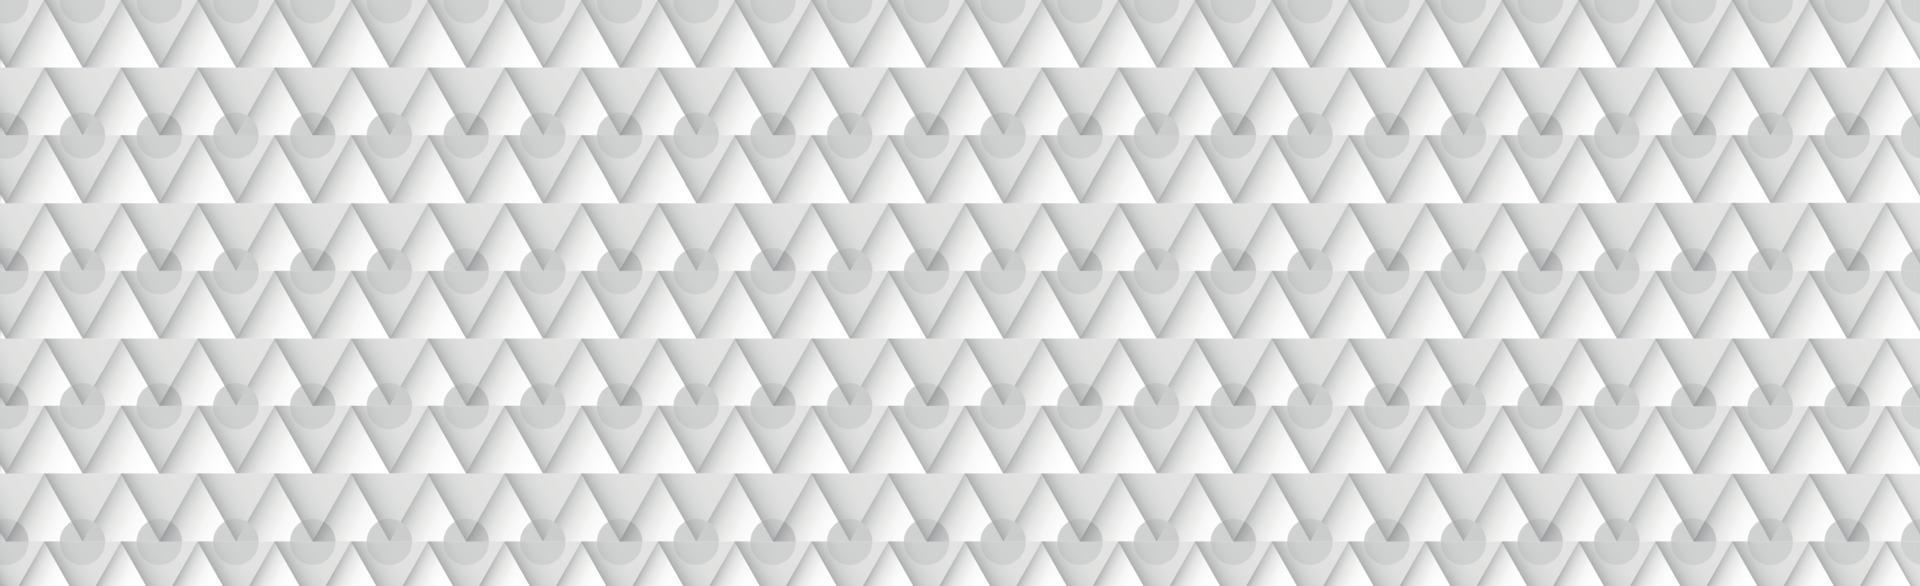 fundo abstrato cinza - retângulos volumétricos brancos - vetor